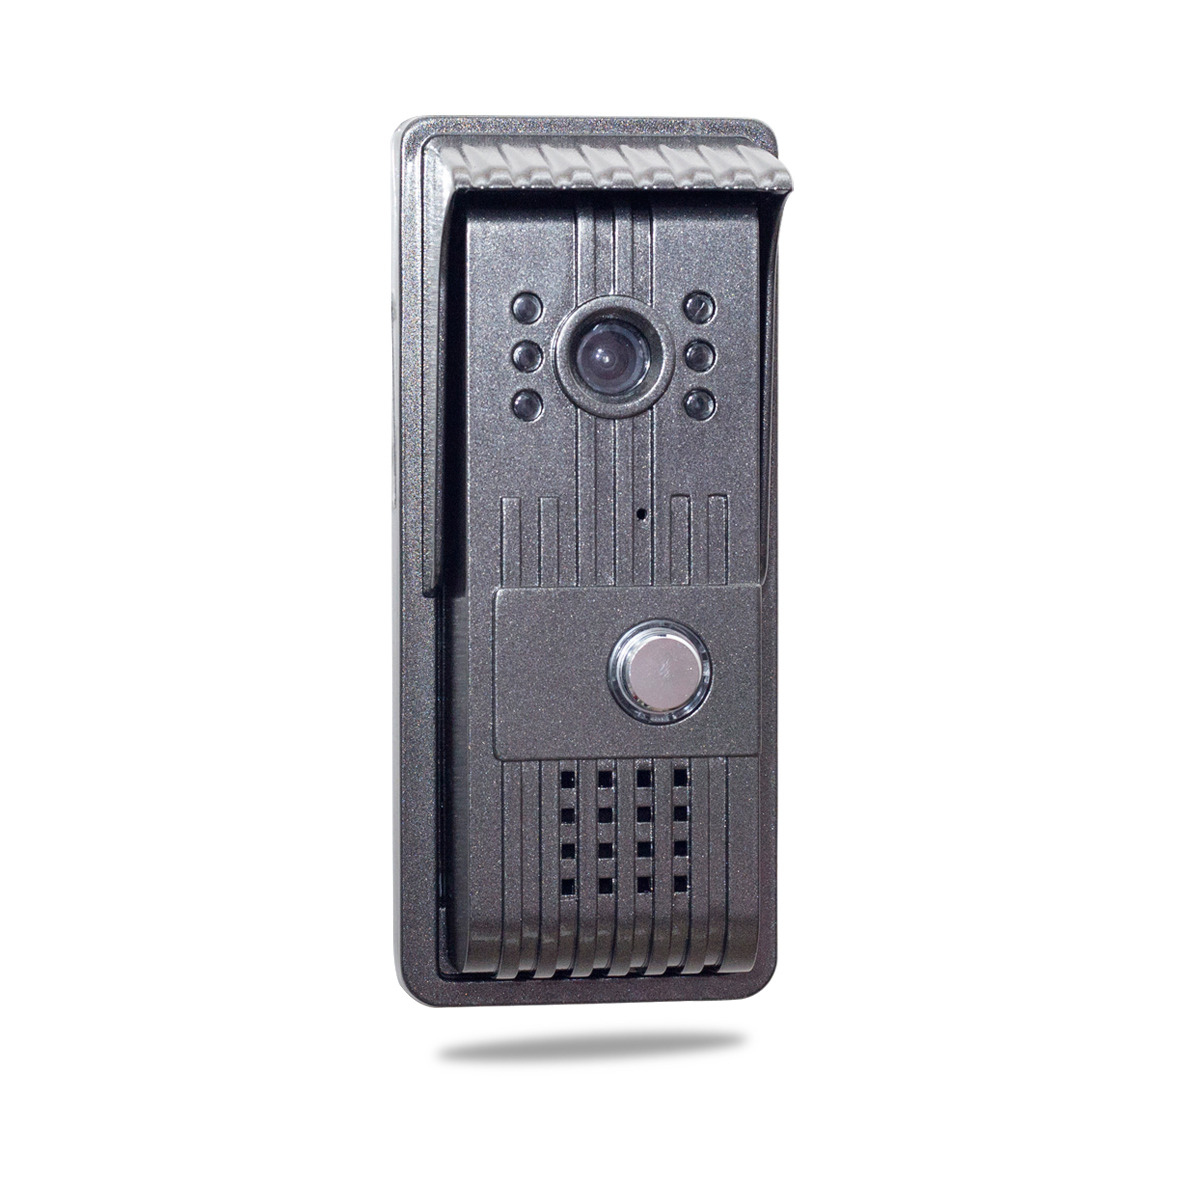 AlyBell Беспроводной дверной звонок с беспроводной дингдонг звонок, видео-телефон двери интерком дверной кольцо поддержка iOS/Android смартфон/планшетный